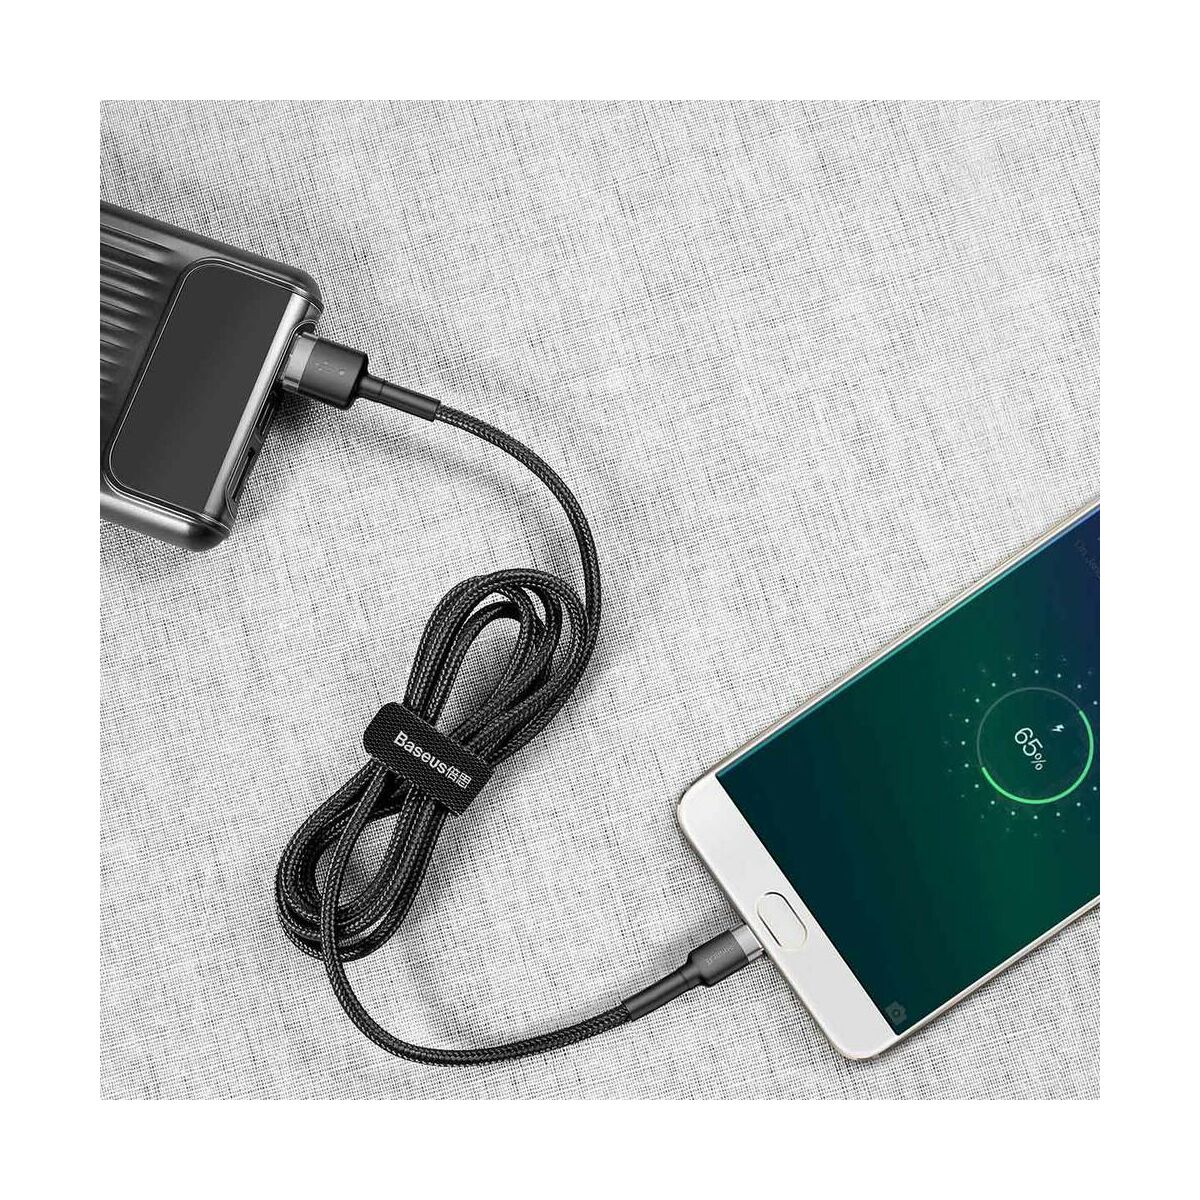 Kép 9/9 - Baseus Micro USB kábel, Cafule 2.4A, 1m, szürke/fekete (CAMKLF-BG1)